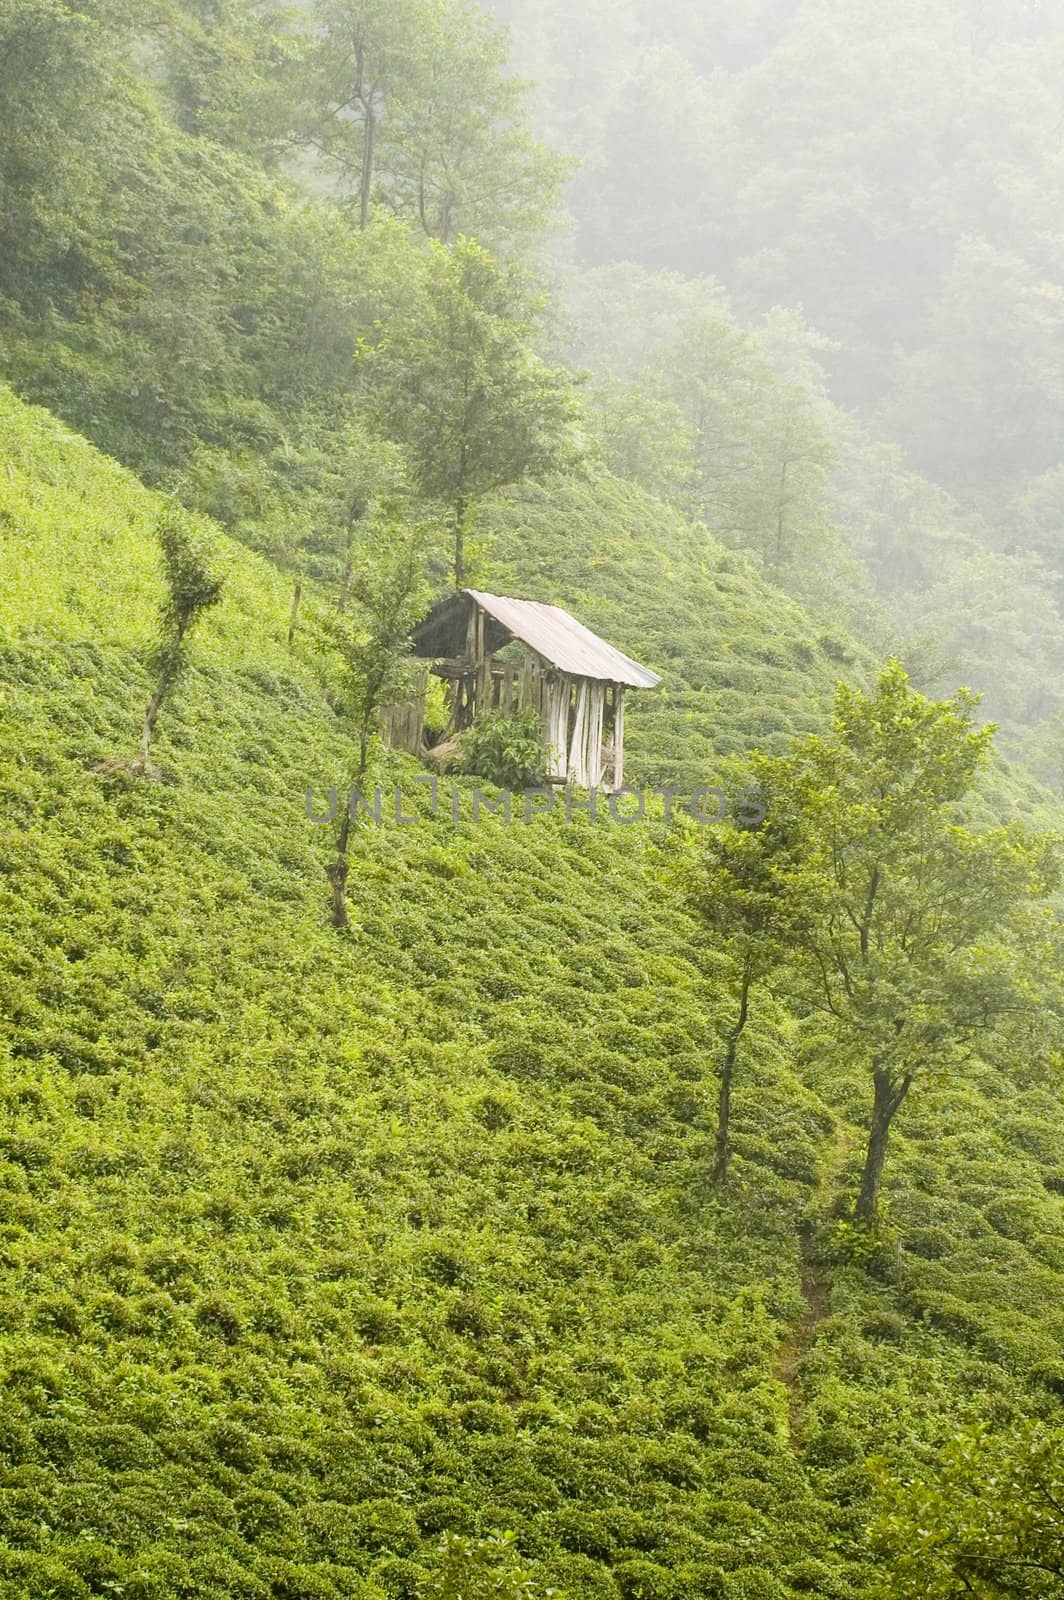 Tea plants on the hills of east Turkey